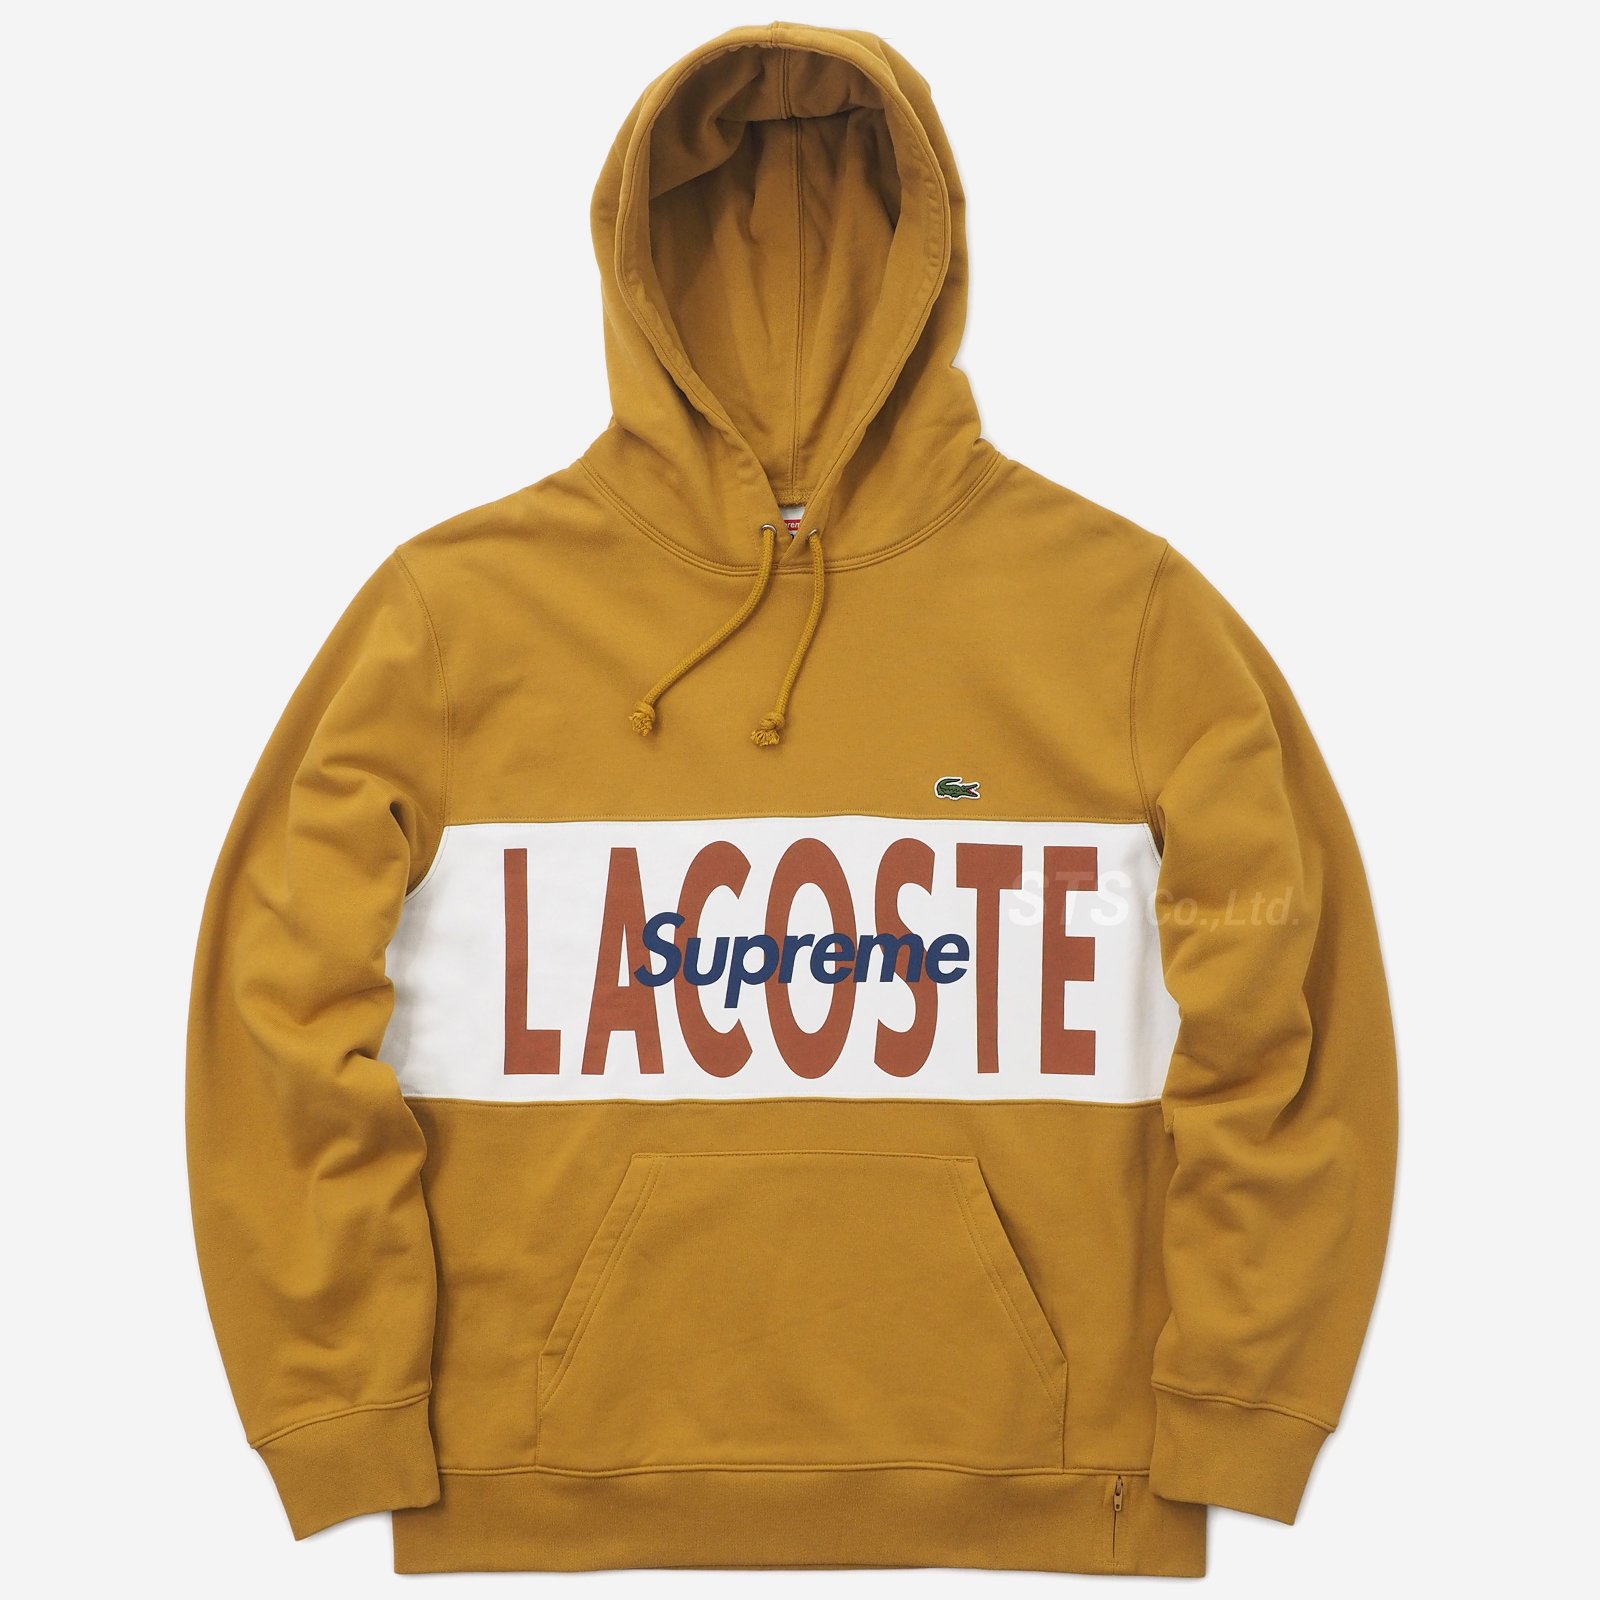 XL Supreme LACOSTE  Hooded Sweatshirt